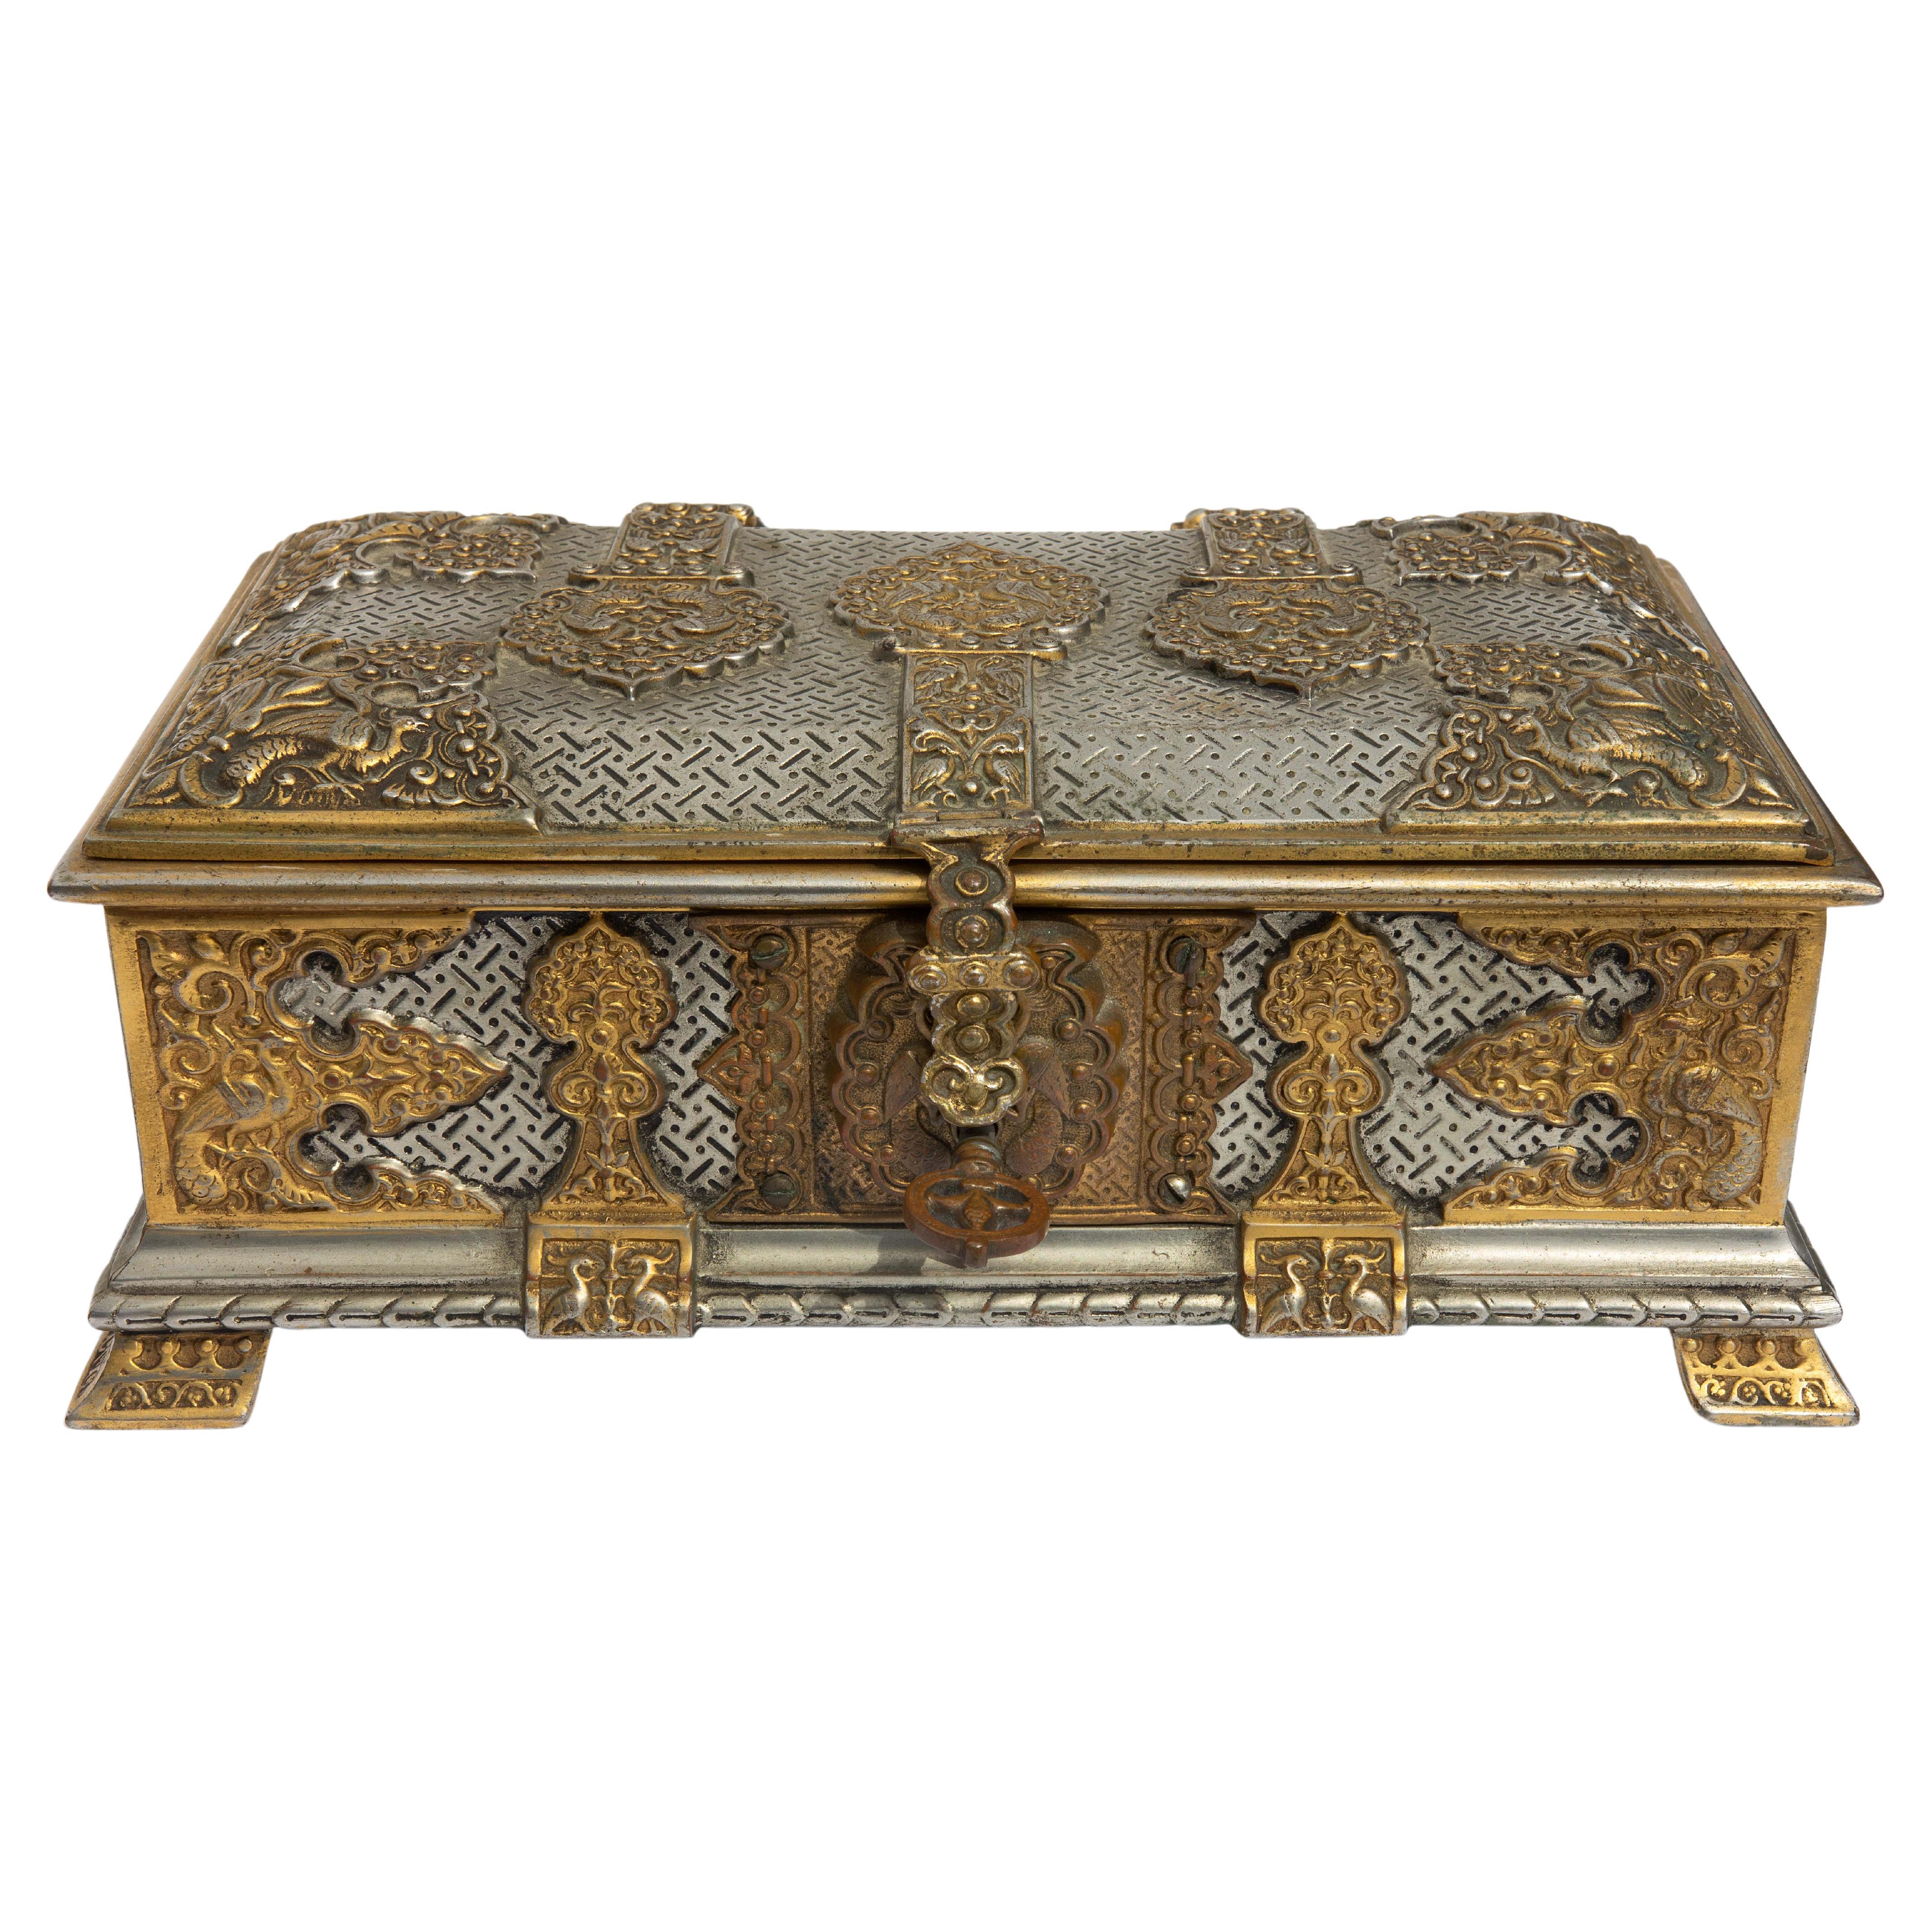 Orientalische Schachtel aus Silber und vergoldeter Bronze aus dem 19. Jahrhundert